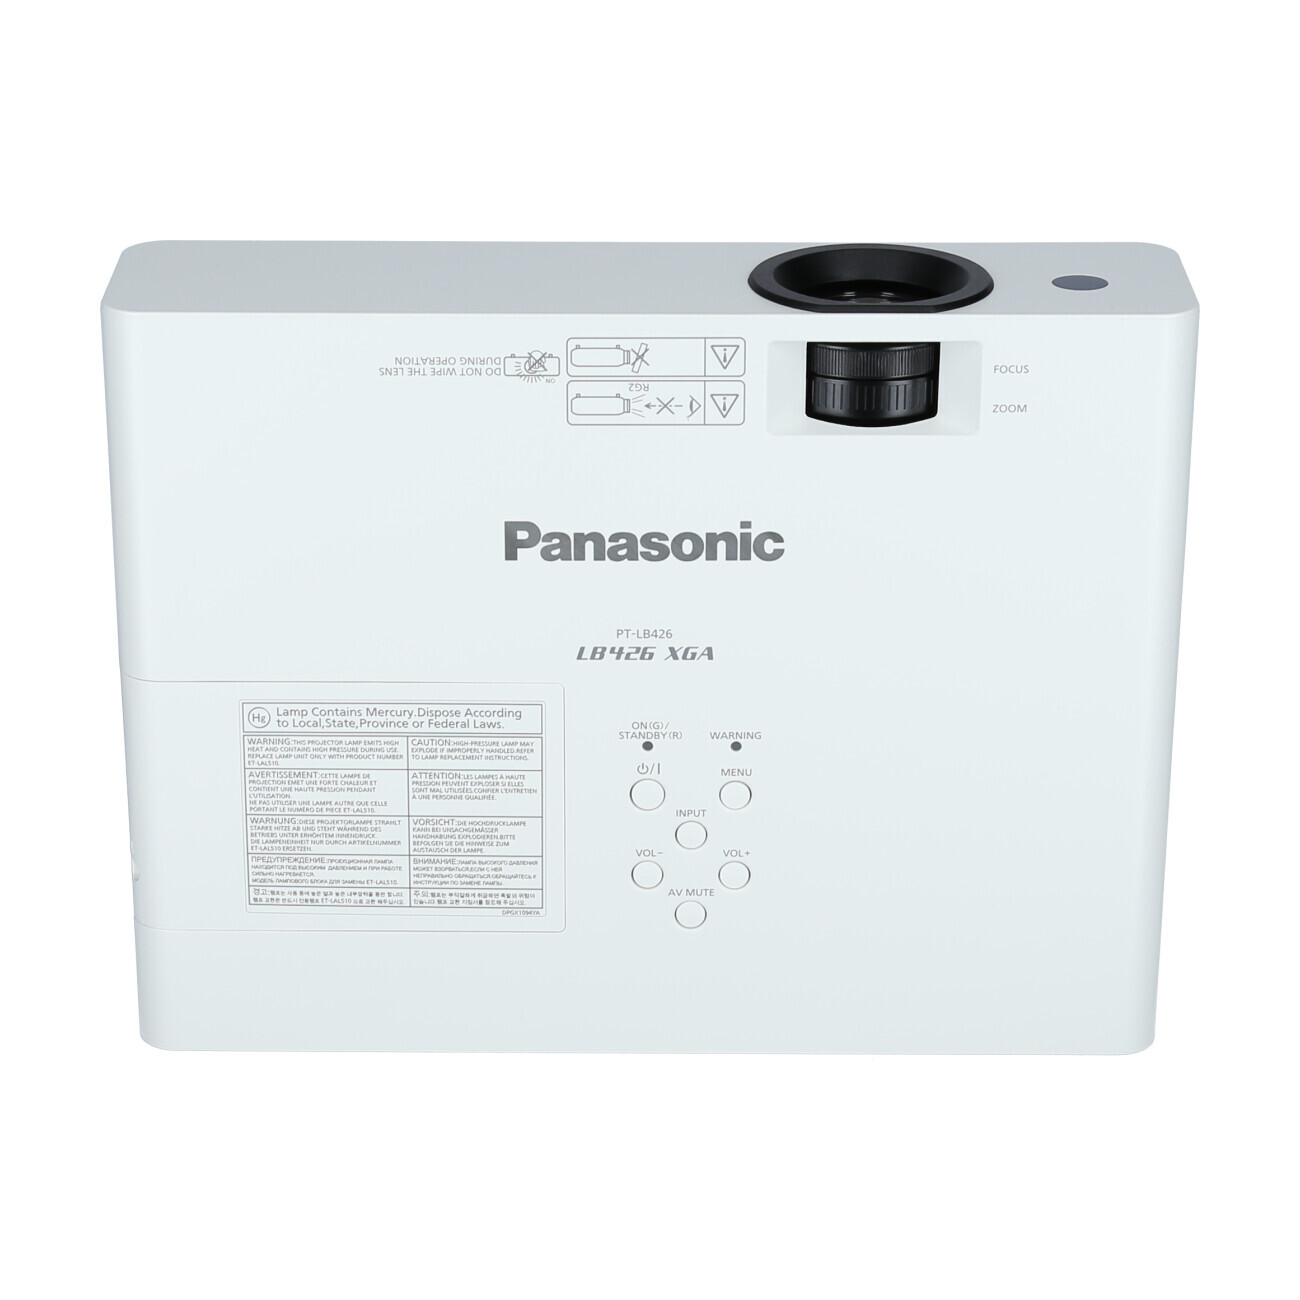 Vorschau: Panasonic PT-LB426 Businessbeamer mit 4100 Lumen und XGA Auflösung